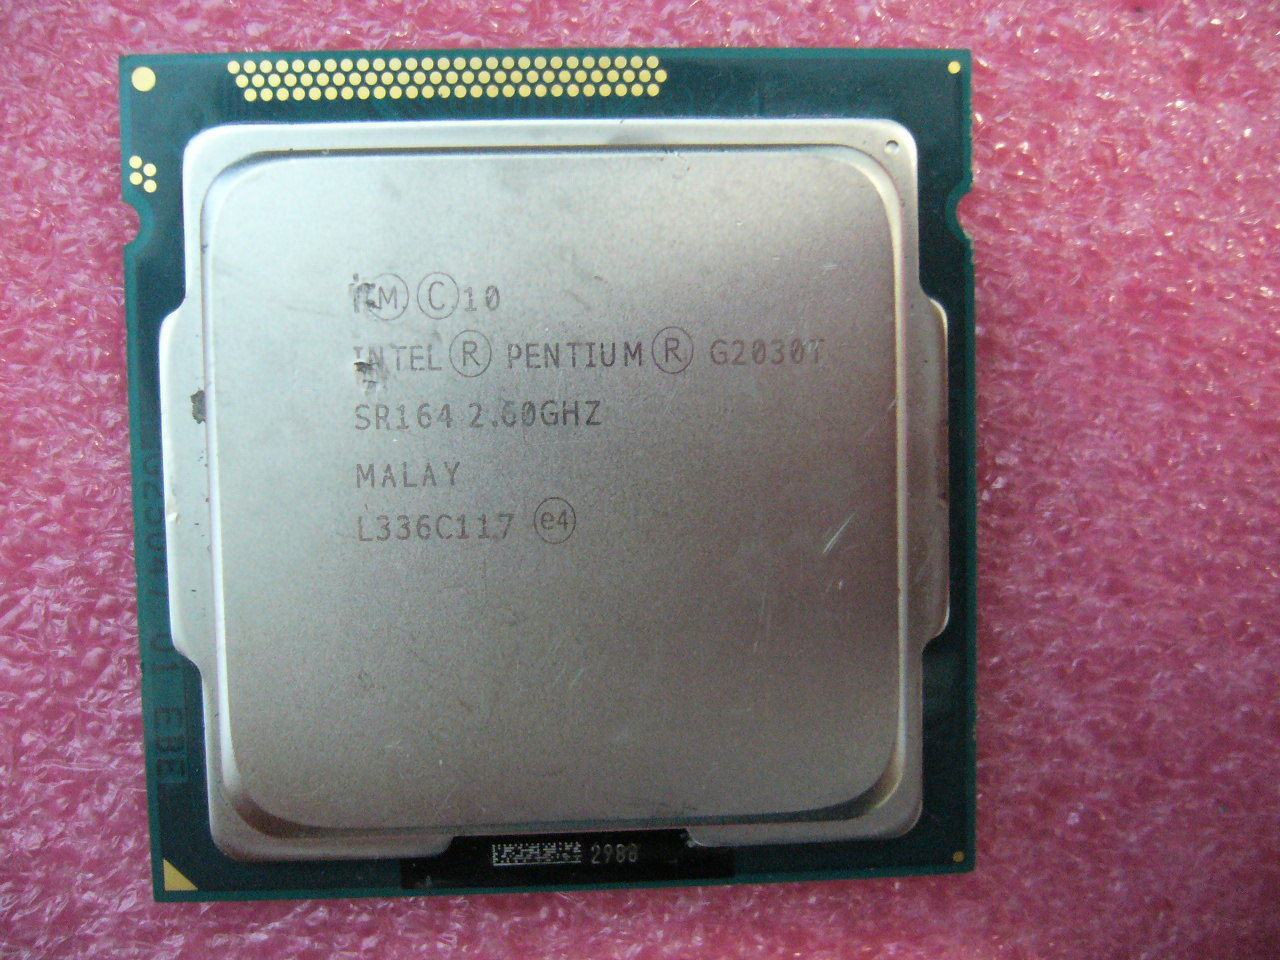 QTY 1x INTEL Pentium CPU G2030T 2.6GHZ/3MB LGA1155 SR164 TDP 35W